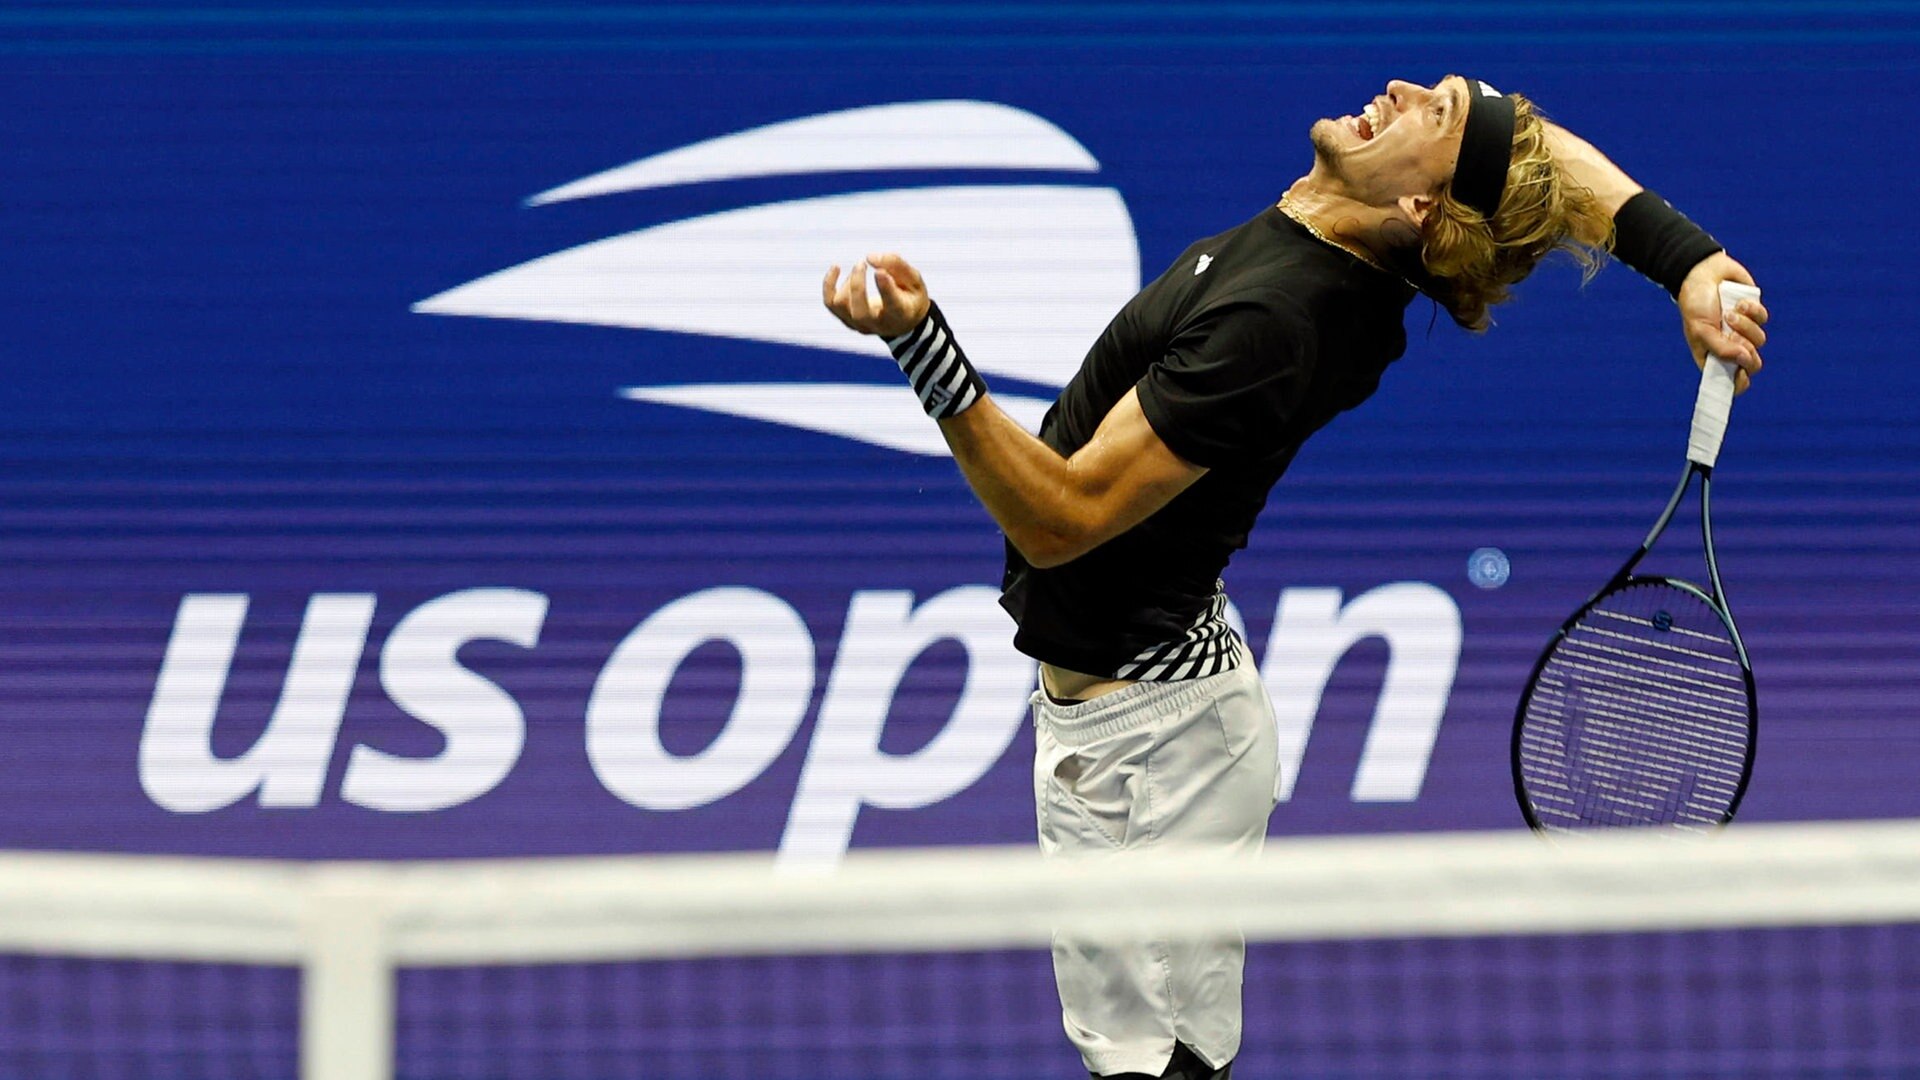 US Open Angeschlagener Zverev verpasst Halbfinale - Aus gegen Alcaraz NDR.de - Sport